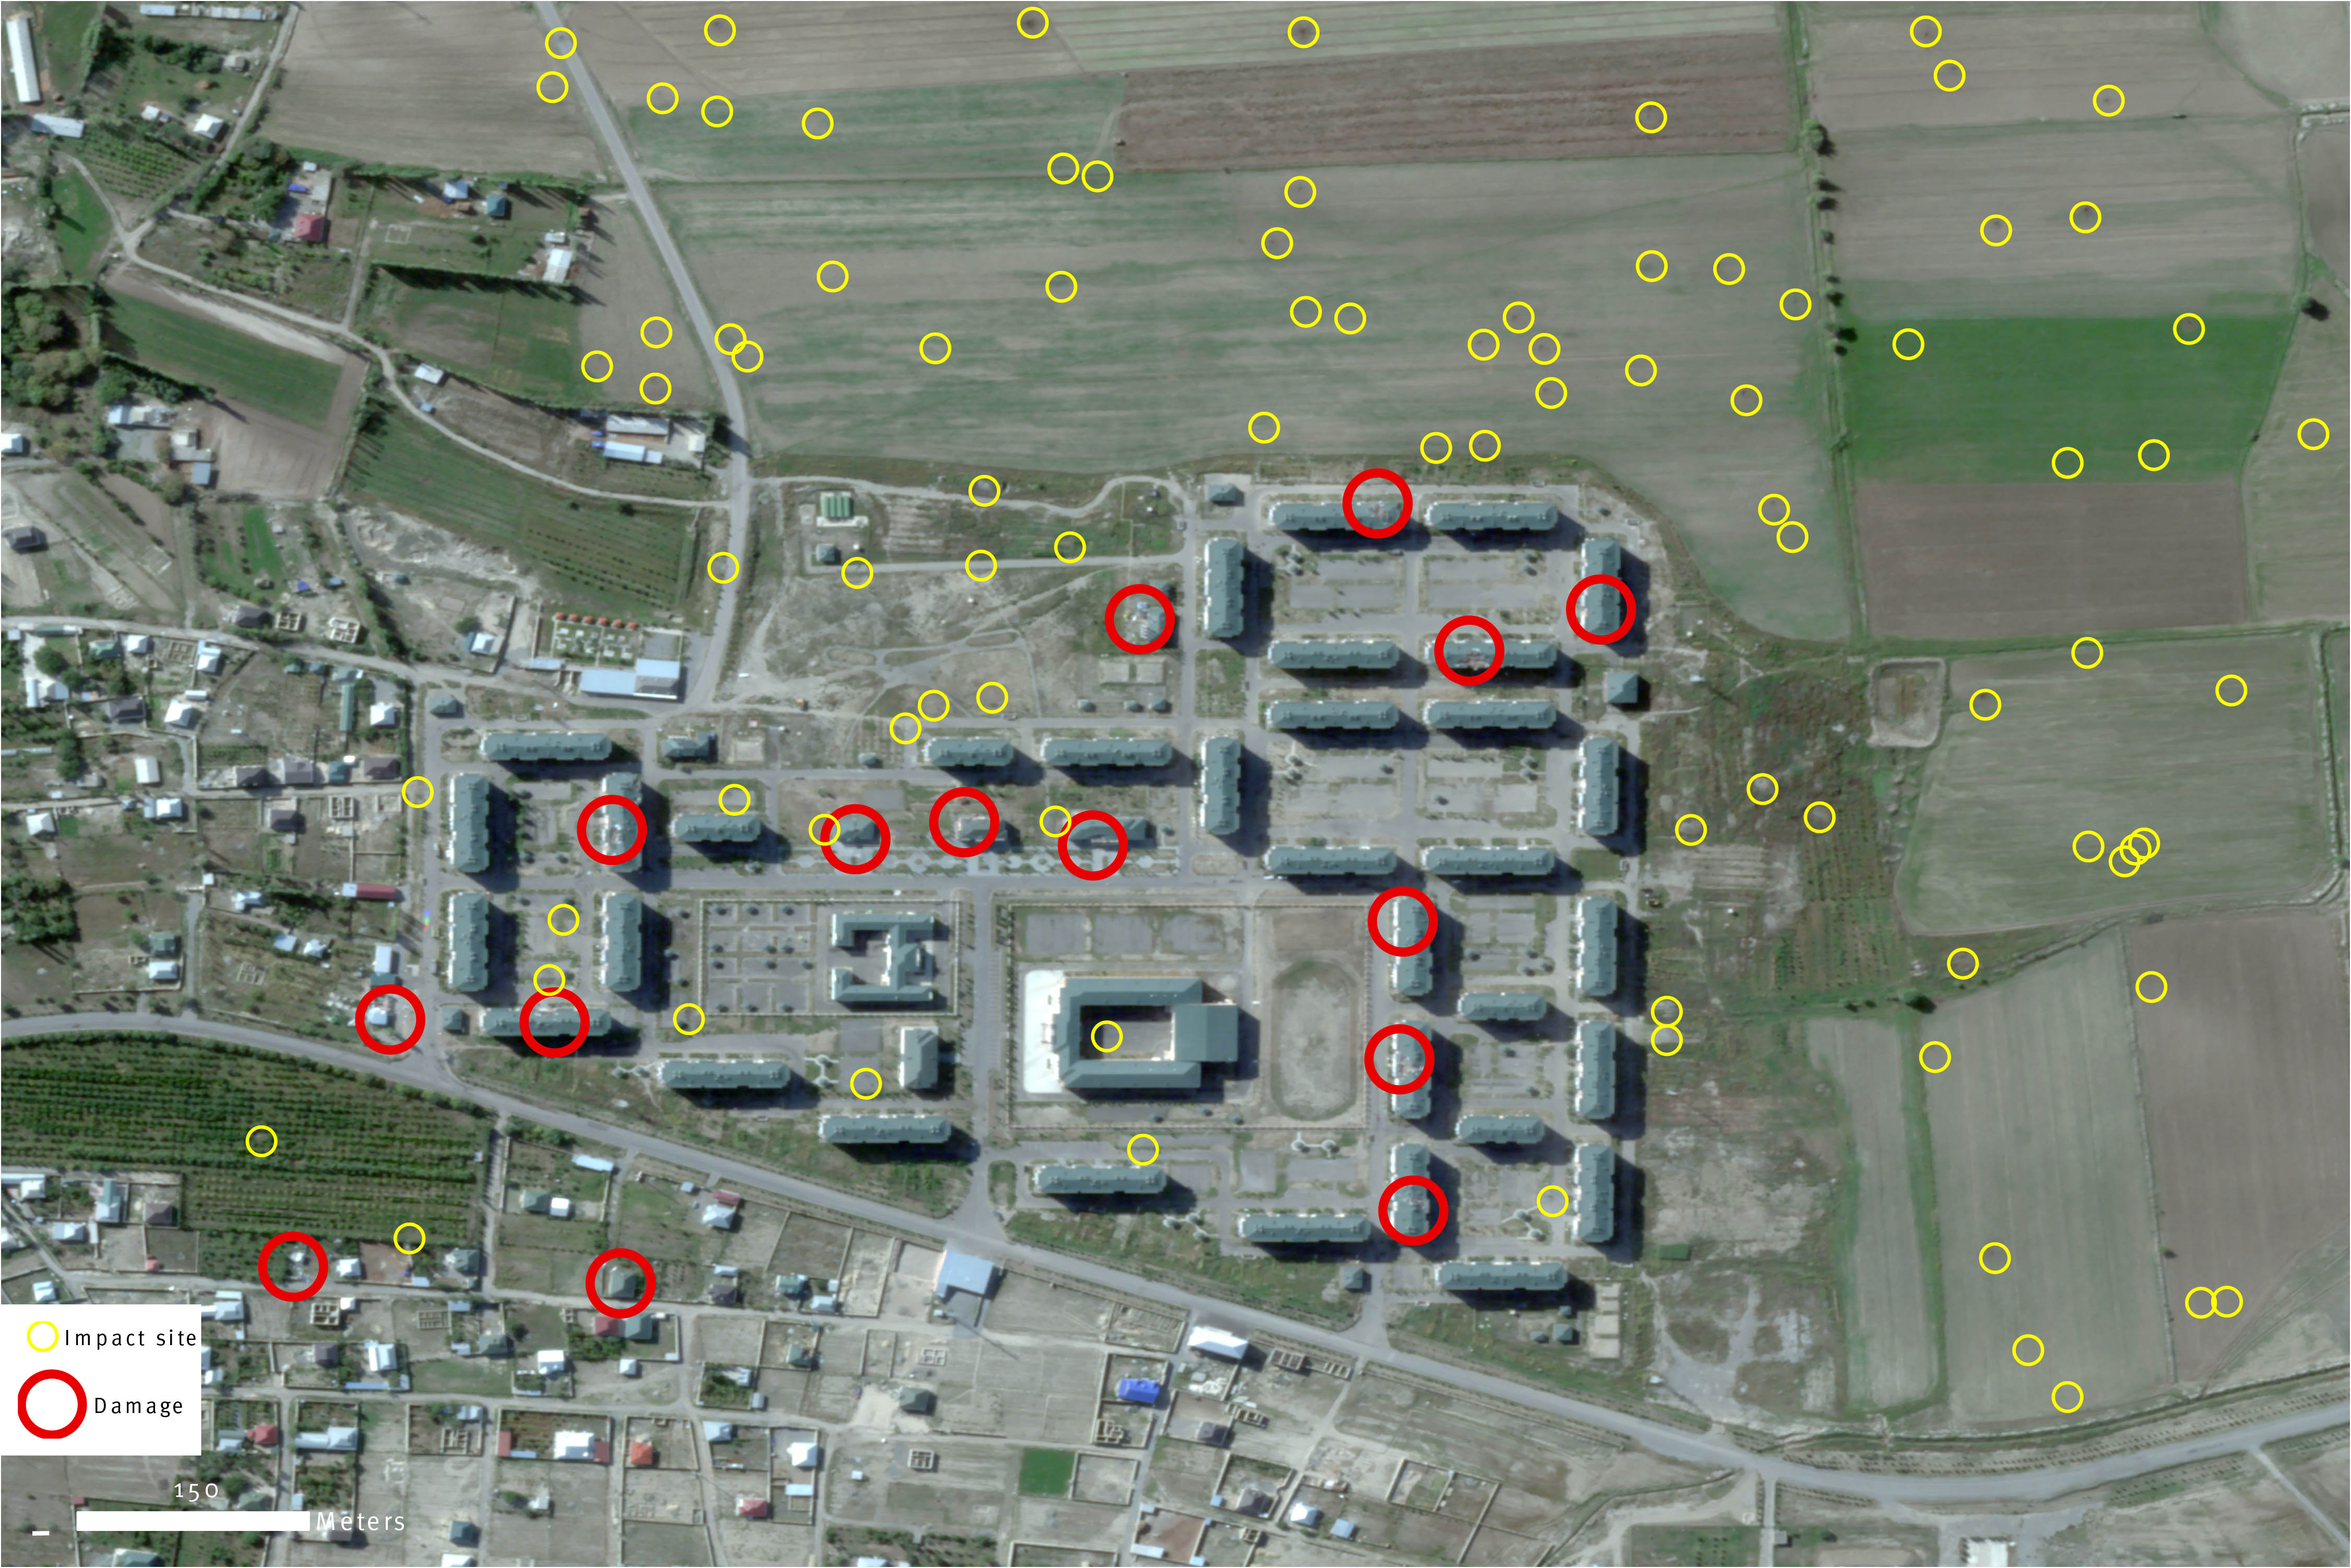 Cette image satellite enregistrée le 3 octobre 2020 montre l’impact de tirs d’artillerie dans la zone résidentielle de Shyraharkh (banlieue de Tartar), dans l'ouest de l'Azerbaïdjan, suite à une attaque menée par les forces arméniennes. Les cercle jaunes montrent les sites d’impact dans des champs, et les cercles rouges montrent des immeubles gravement endommagés.